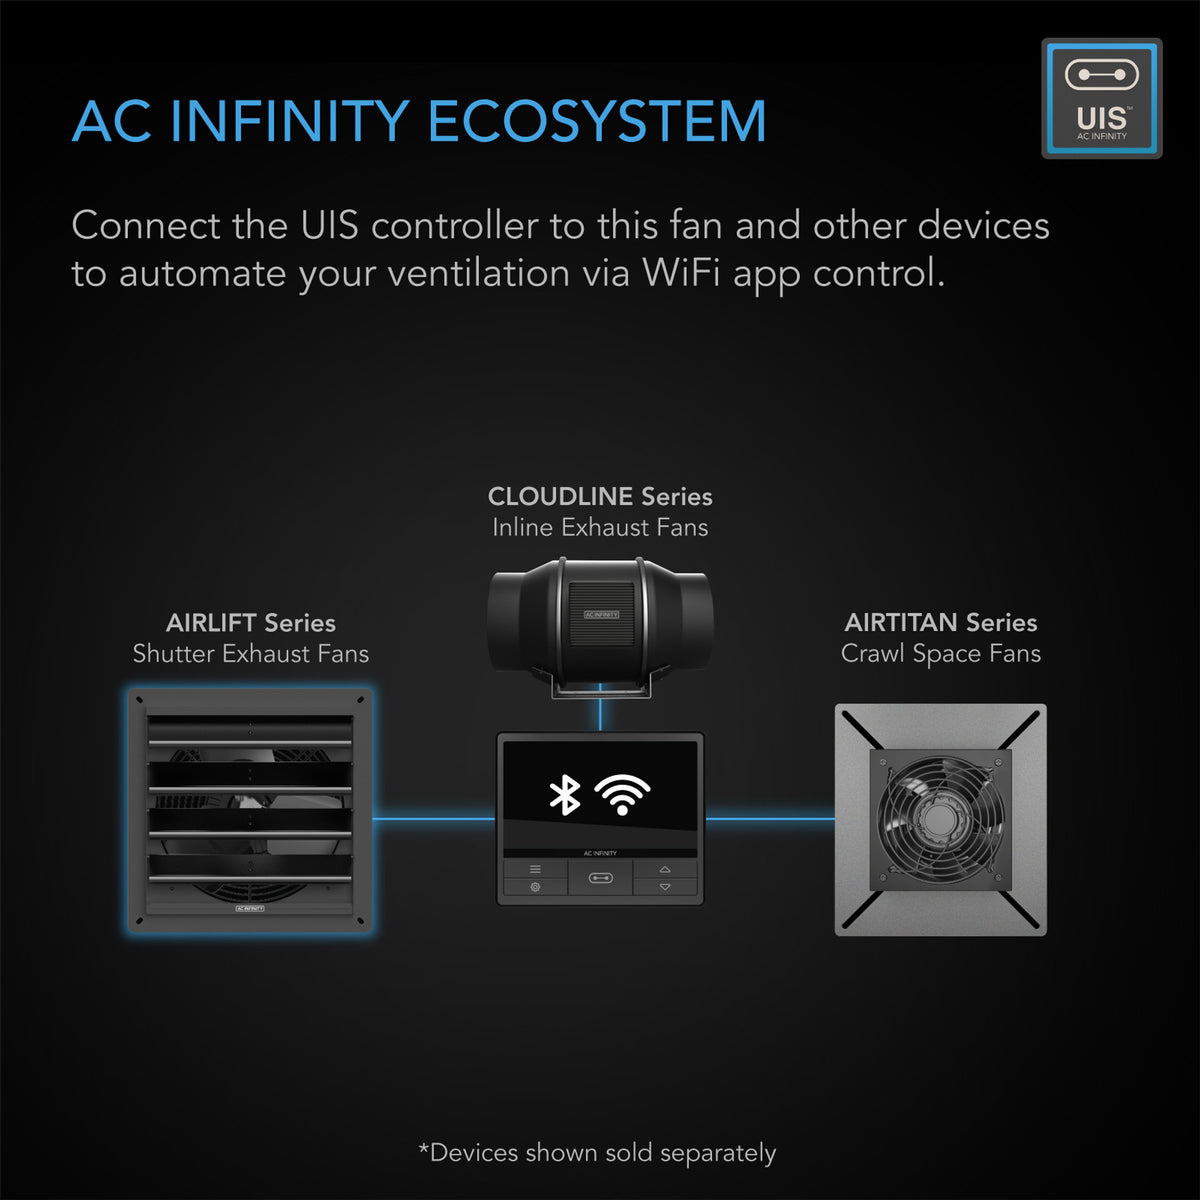 AC Infinity ecosystem